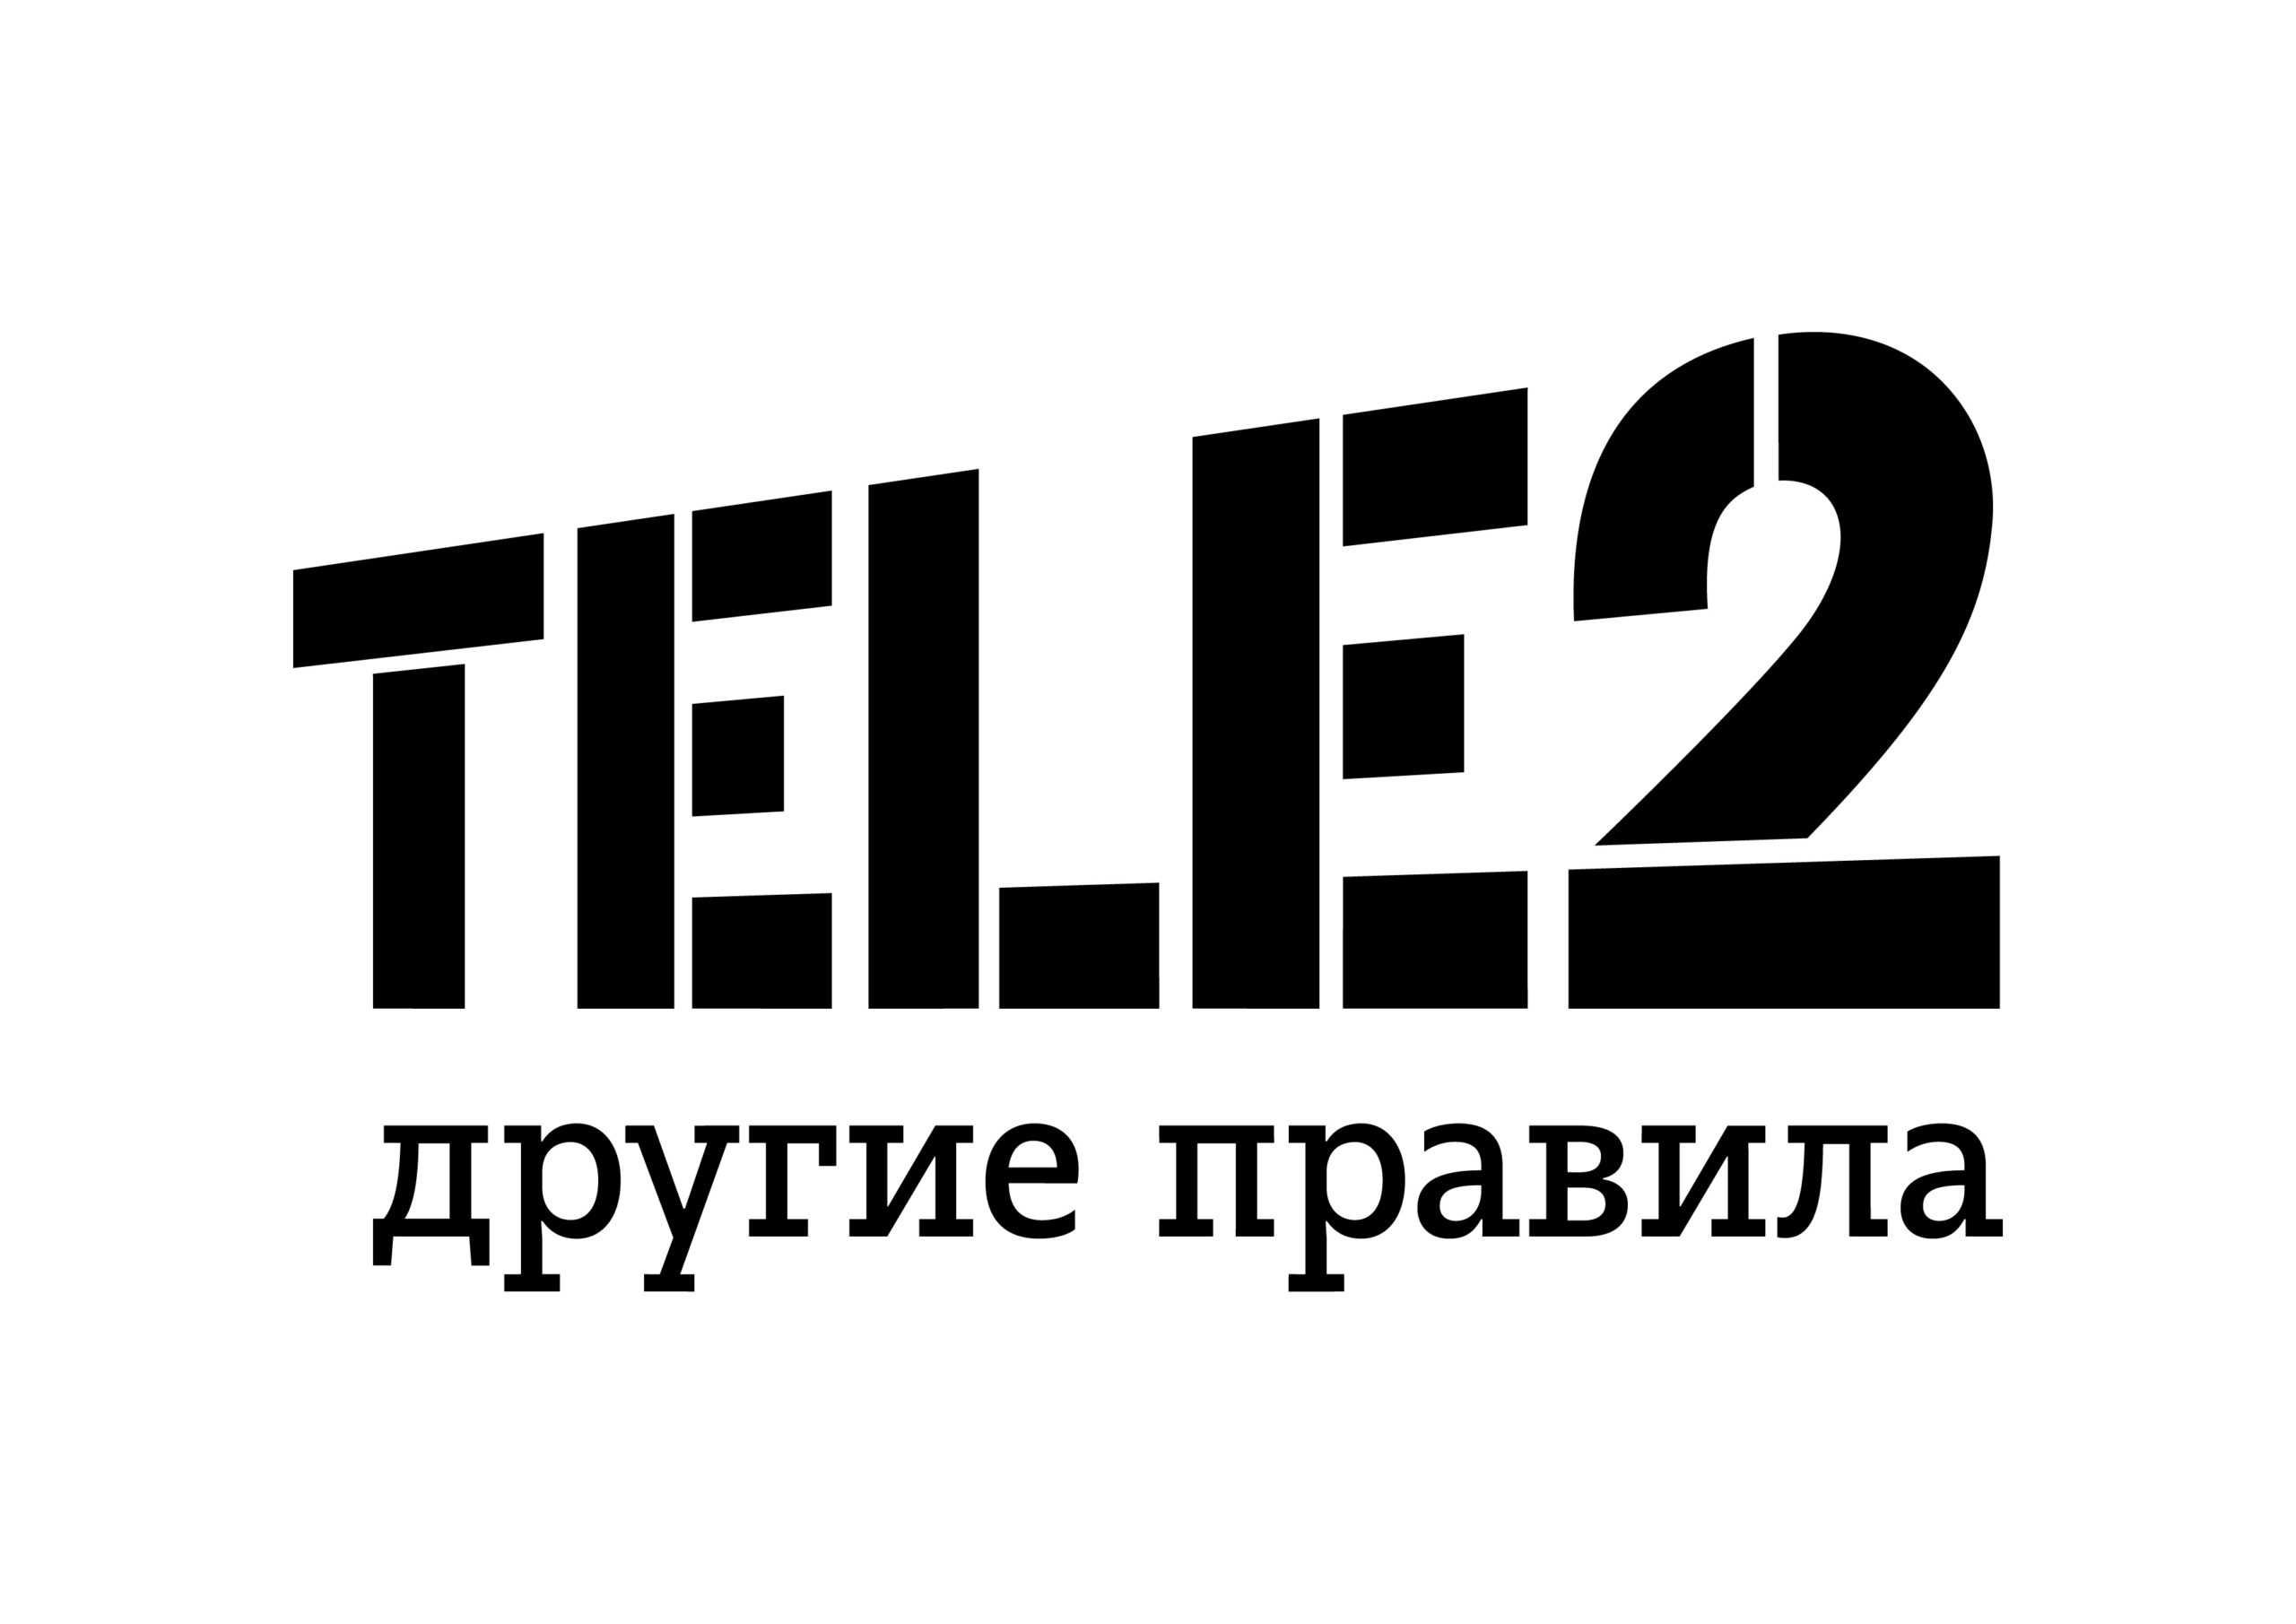 Логотип ТЕЛЕ 2